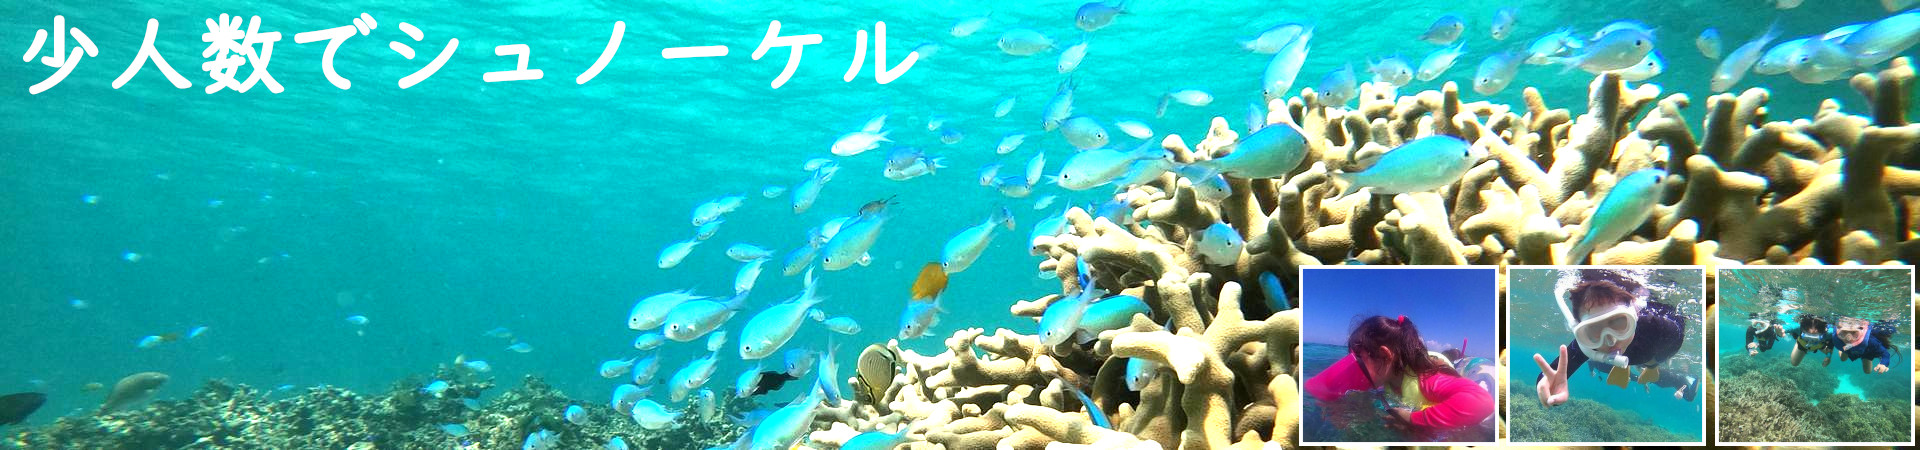 石垣島北部で少人数(4名様)半日シュノーケリングツアーは初心者、シニア、子供、ご家族で貸切対応可。ブログでは石垣島天気情報を掲載